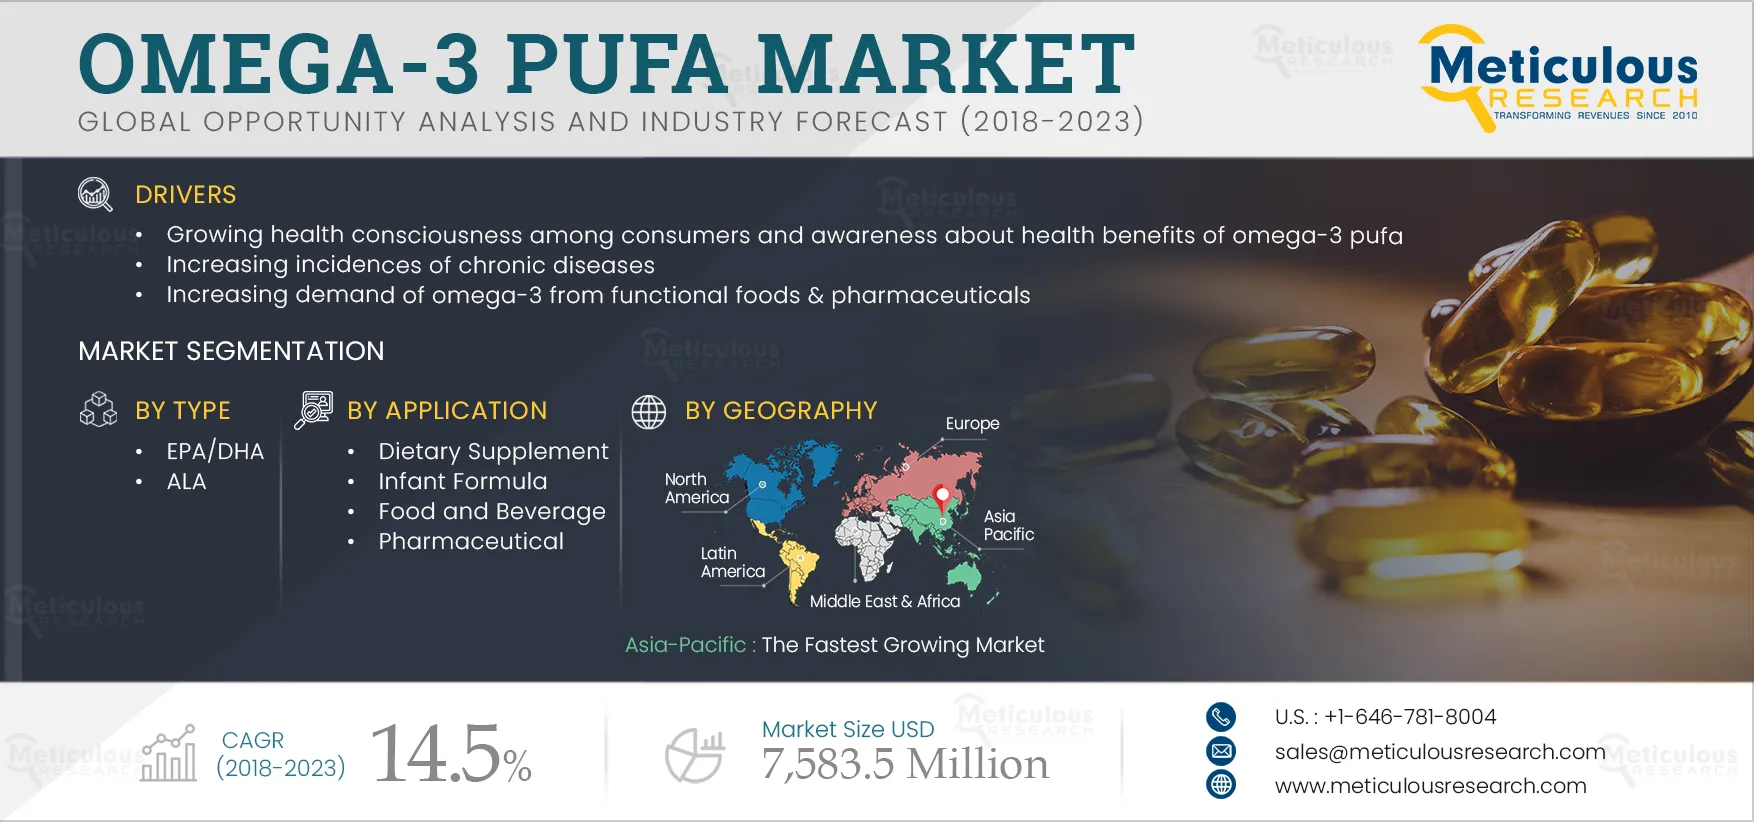 Omega-3 PUFA Market